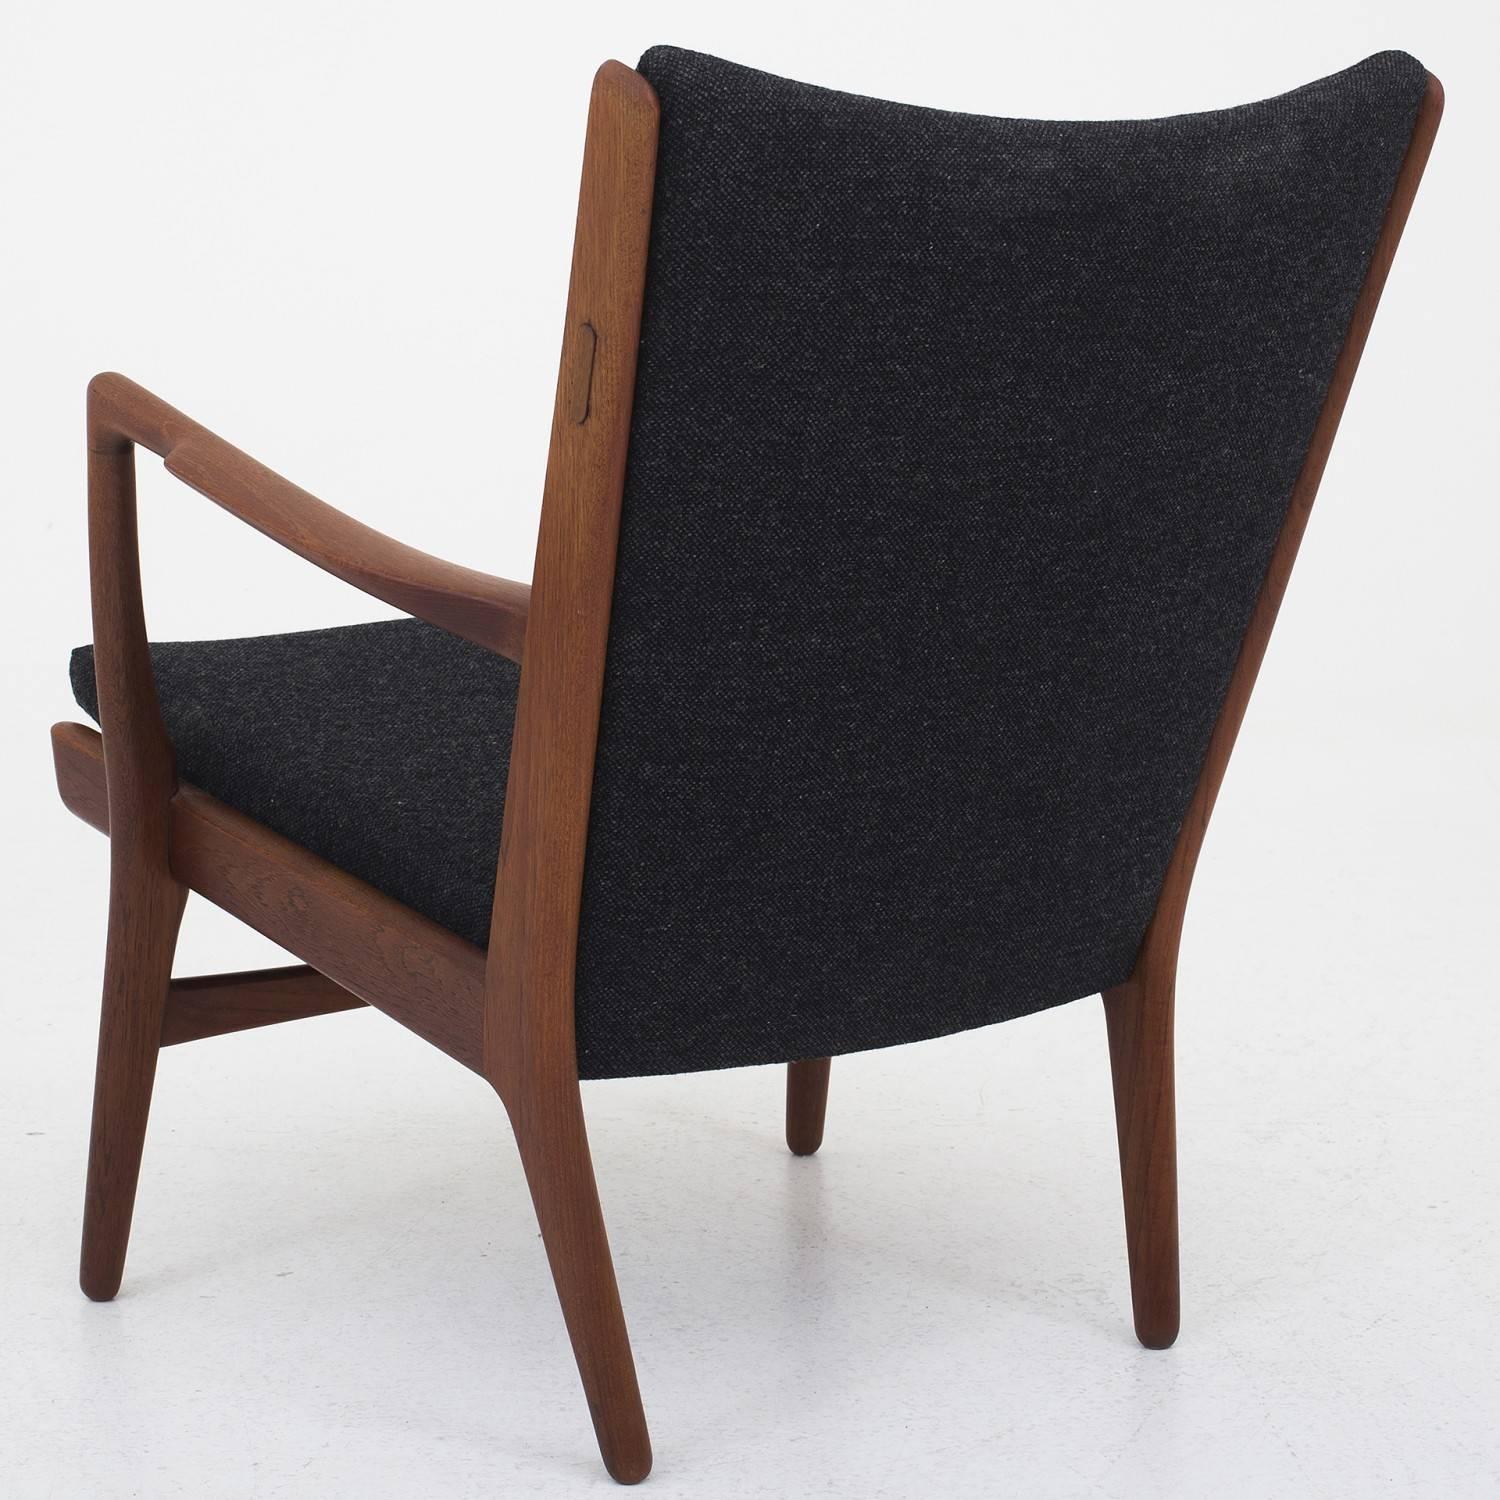 Hans J. Wegner easy chair, model AP16 in teak and wool, Hallingdal 65.